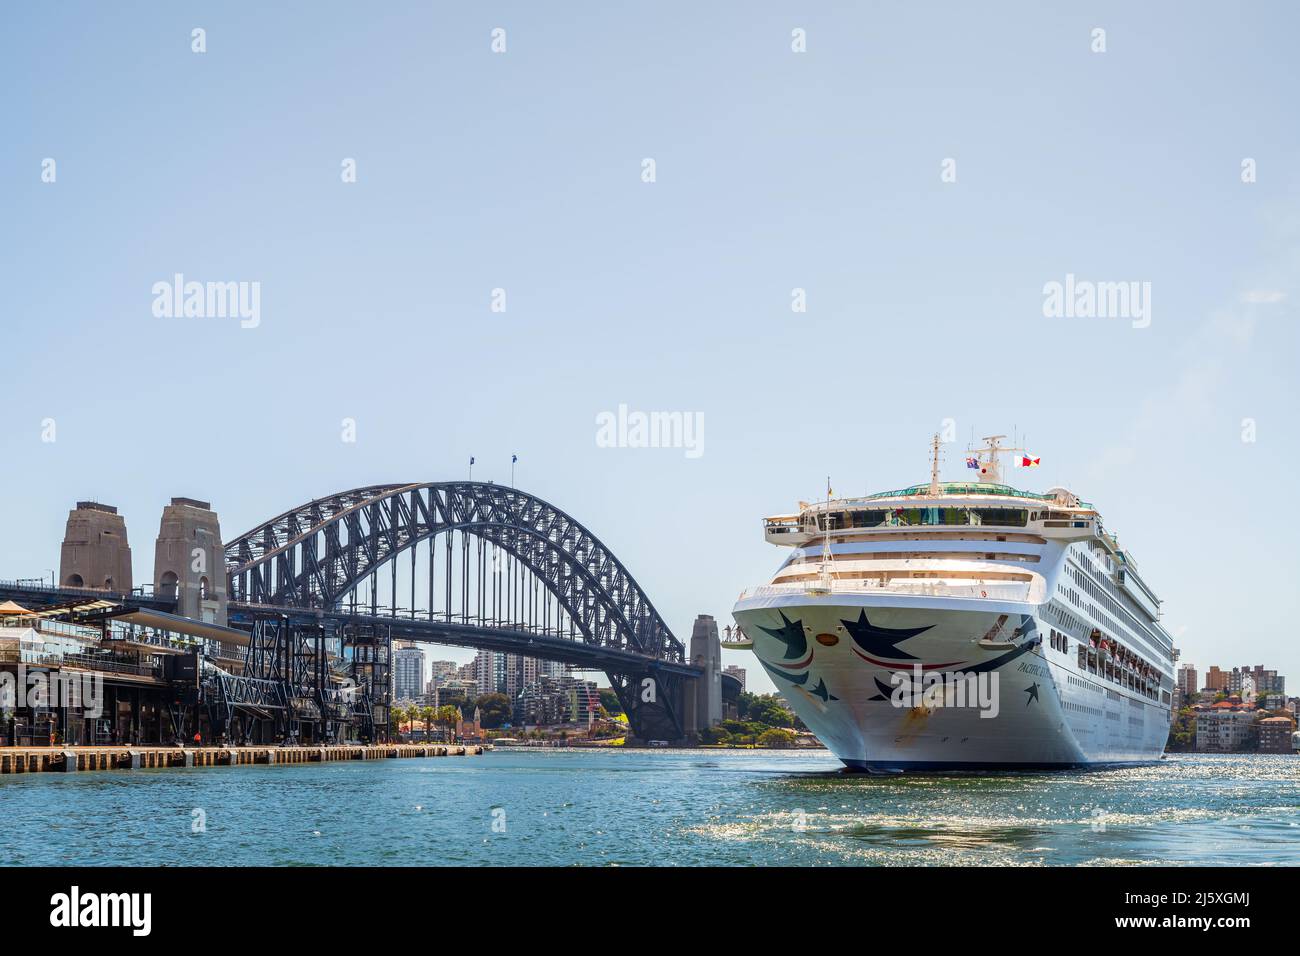 Sydney, Australien - 19. April 2022: Das Pacific Explorer-Schiff wird nach seinem Triumpfe vom Hafen von Sydney zum White Bay Cruise Terminal gezerrt Stockfoto